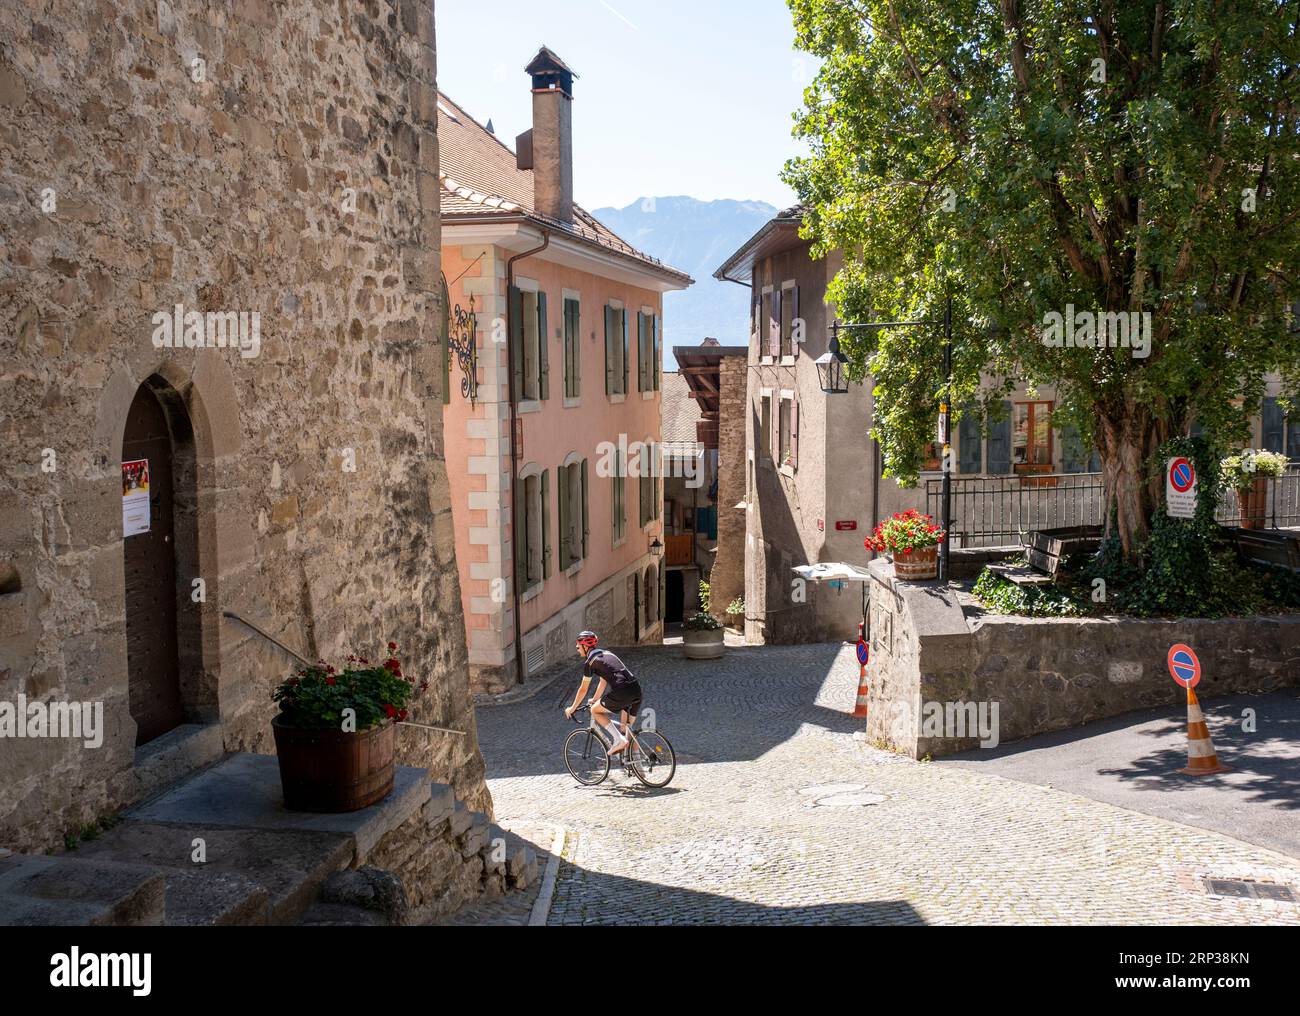 Cycliste dans les rues étroites de Saint Saphorin, région viticole de Lavaux, Canton de Vaud, Suisse. Banque D'Images